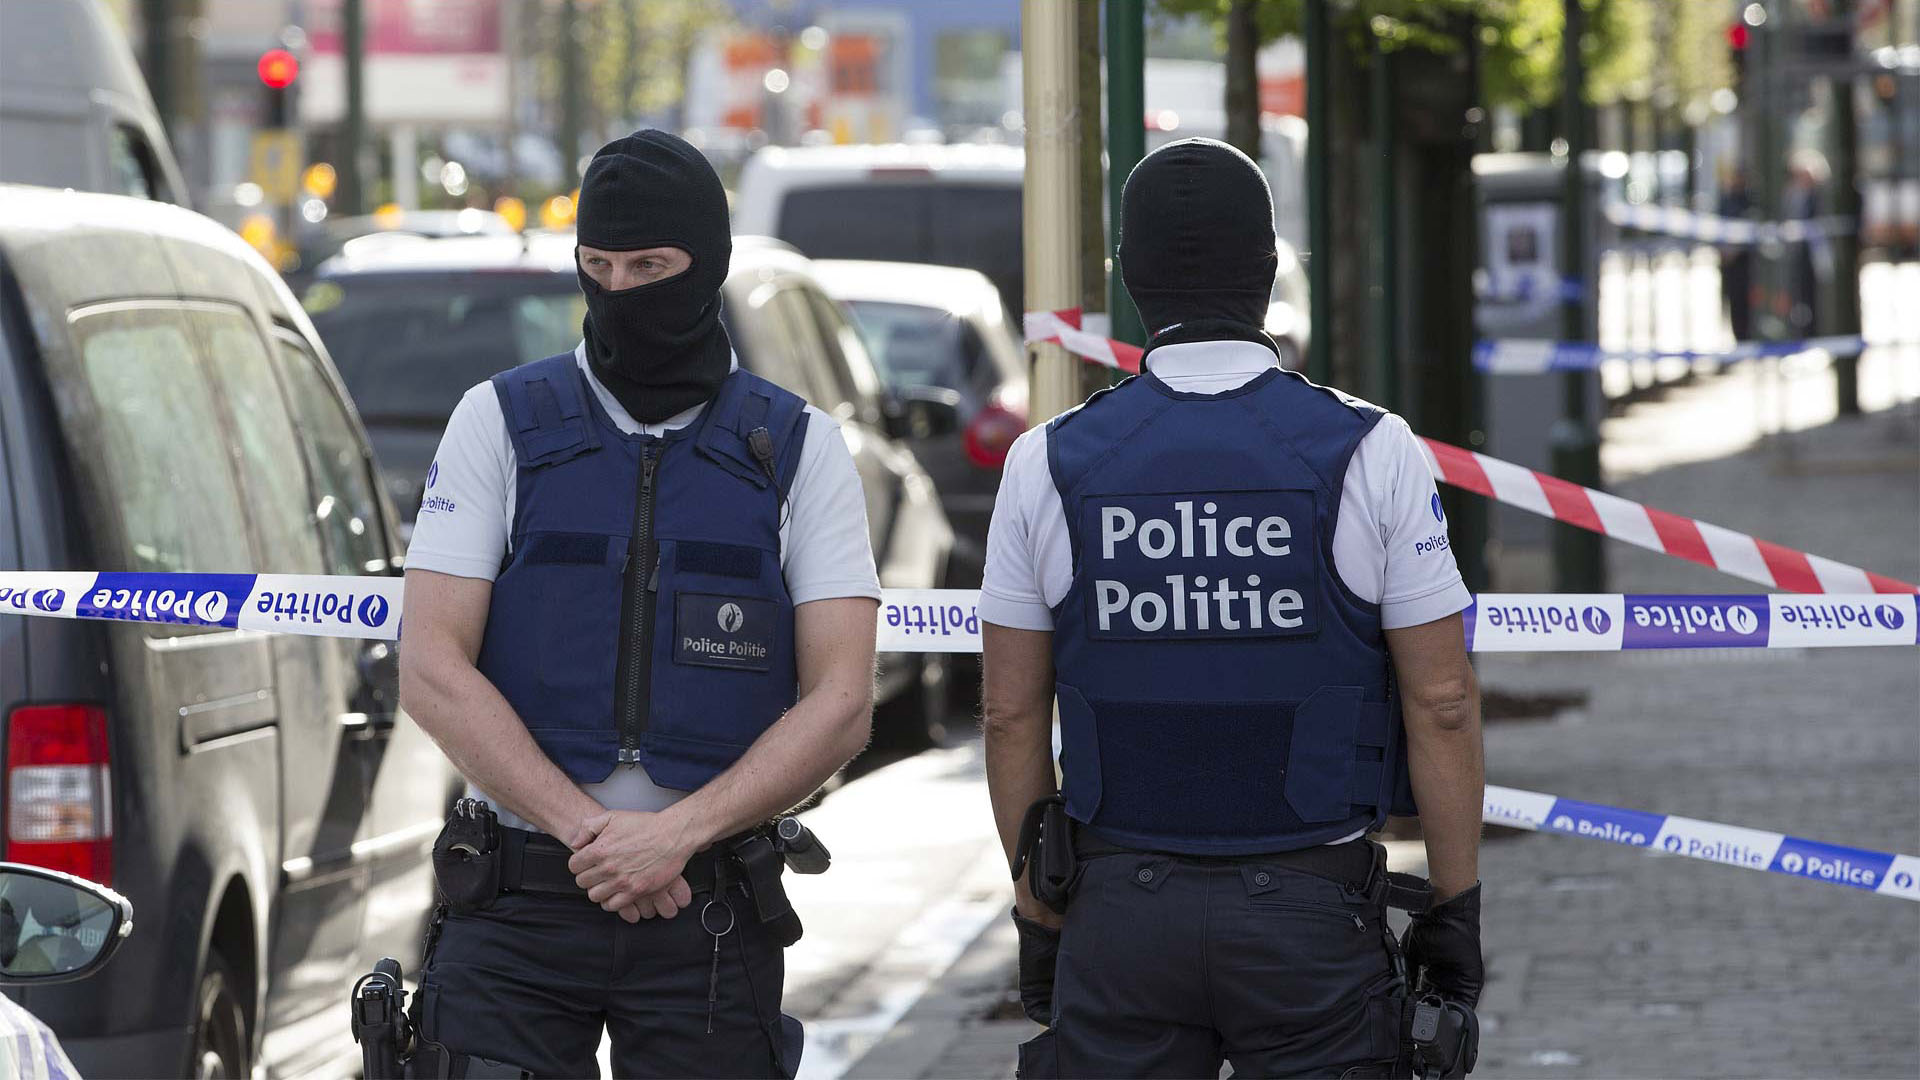 El hecho ocurrió en el barrio de Schaerbeek, al norte de Bruselas, donde un hombre armado atacó a un par de agentes